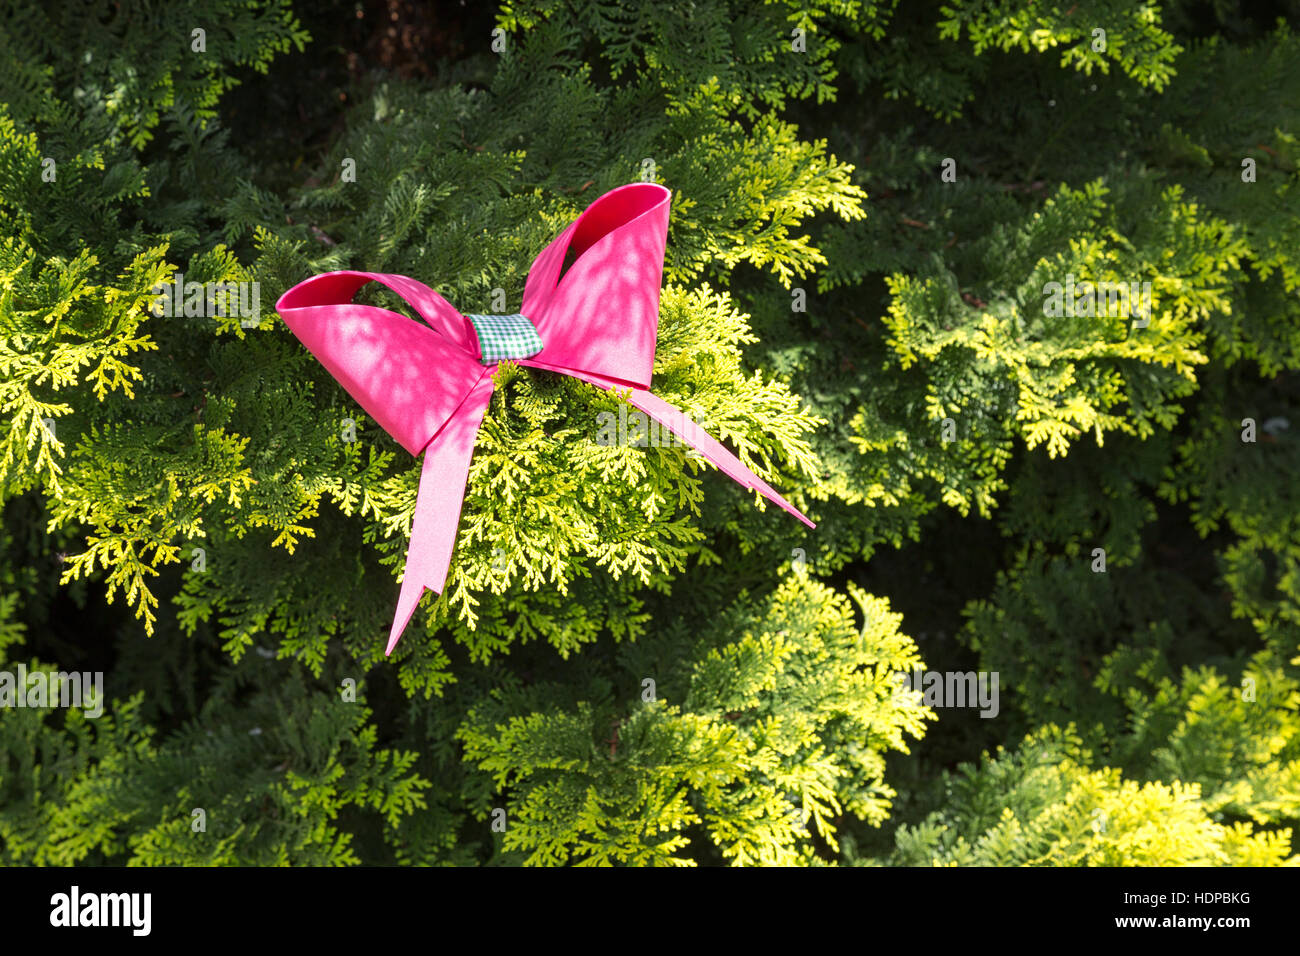 Rosa Schleife binden auf thuja oder orientalischen Lebensbaum (Thuja orientalis) im Garten, als Weihnachten Dekoration, Campos Jordao, Staat Sao Paulo, Brasilien tun Stockfoto